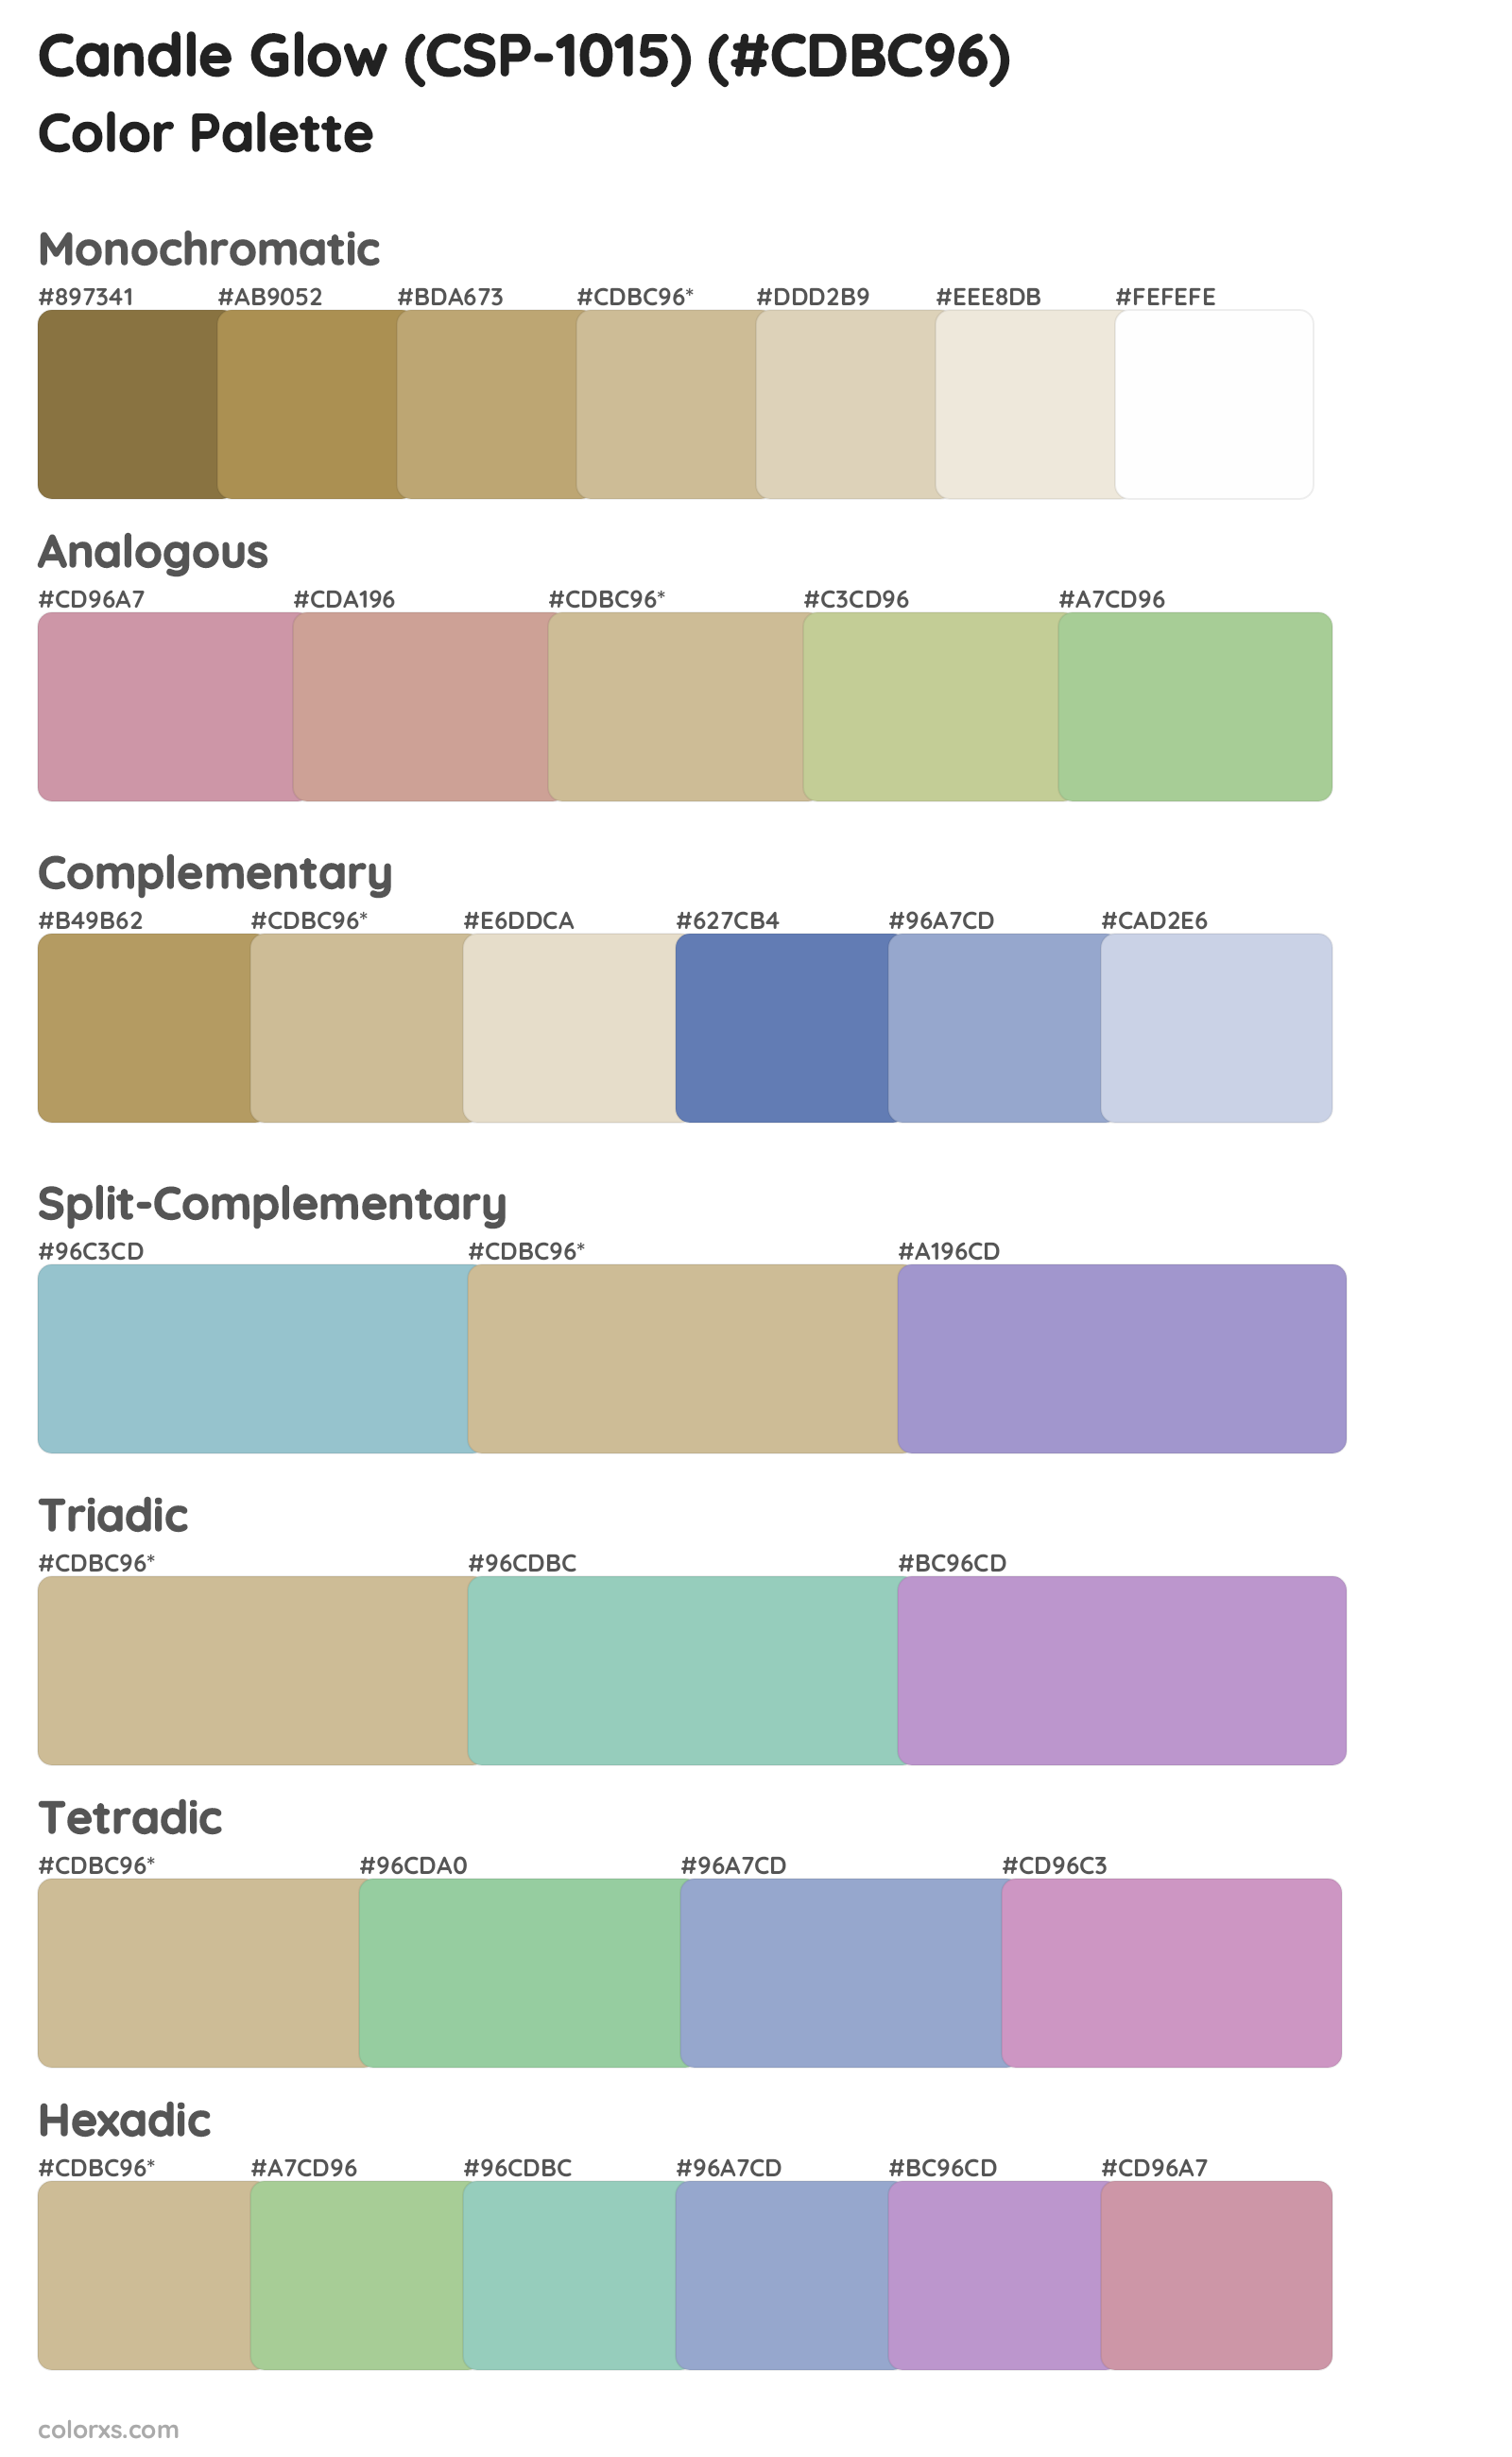 Candle Glow (CSP-1015) Color Scheme Palettes